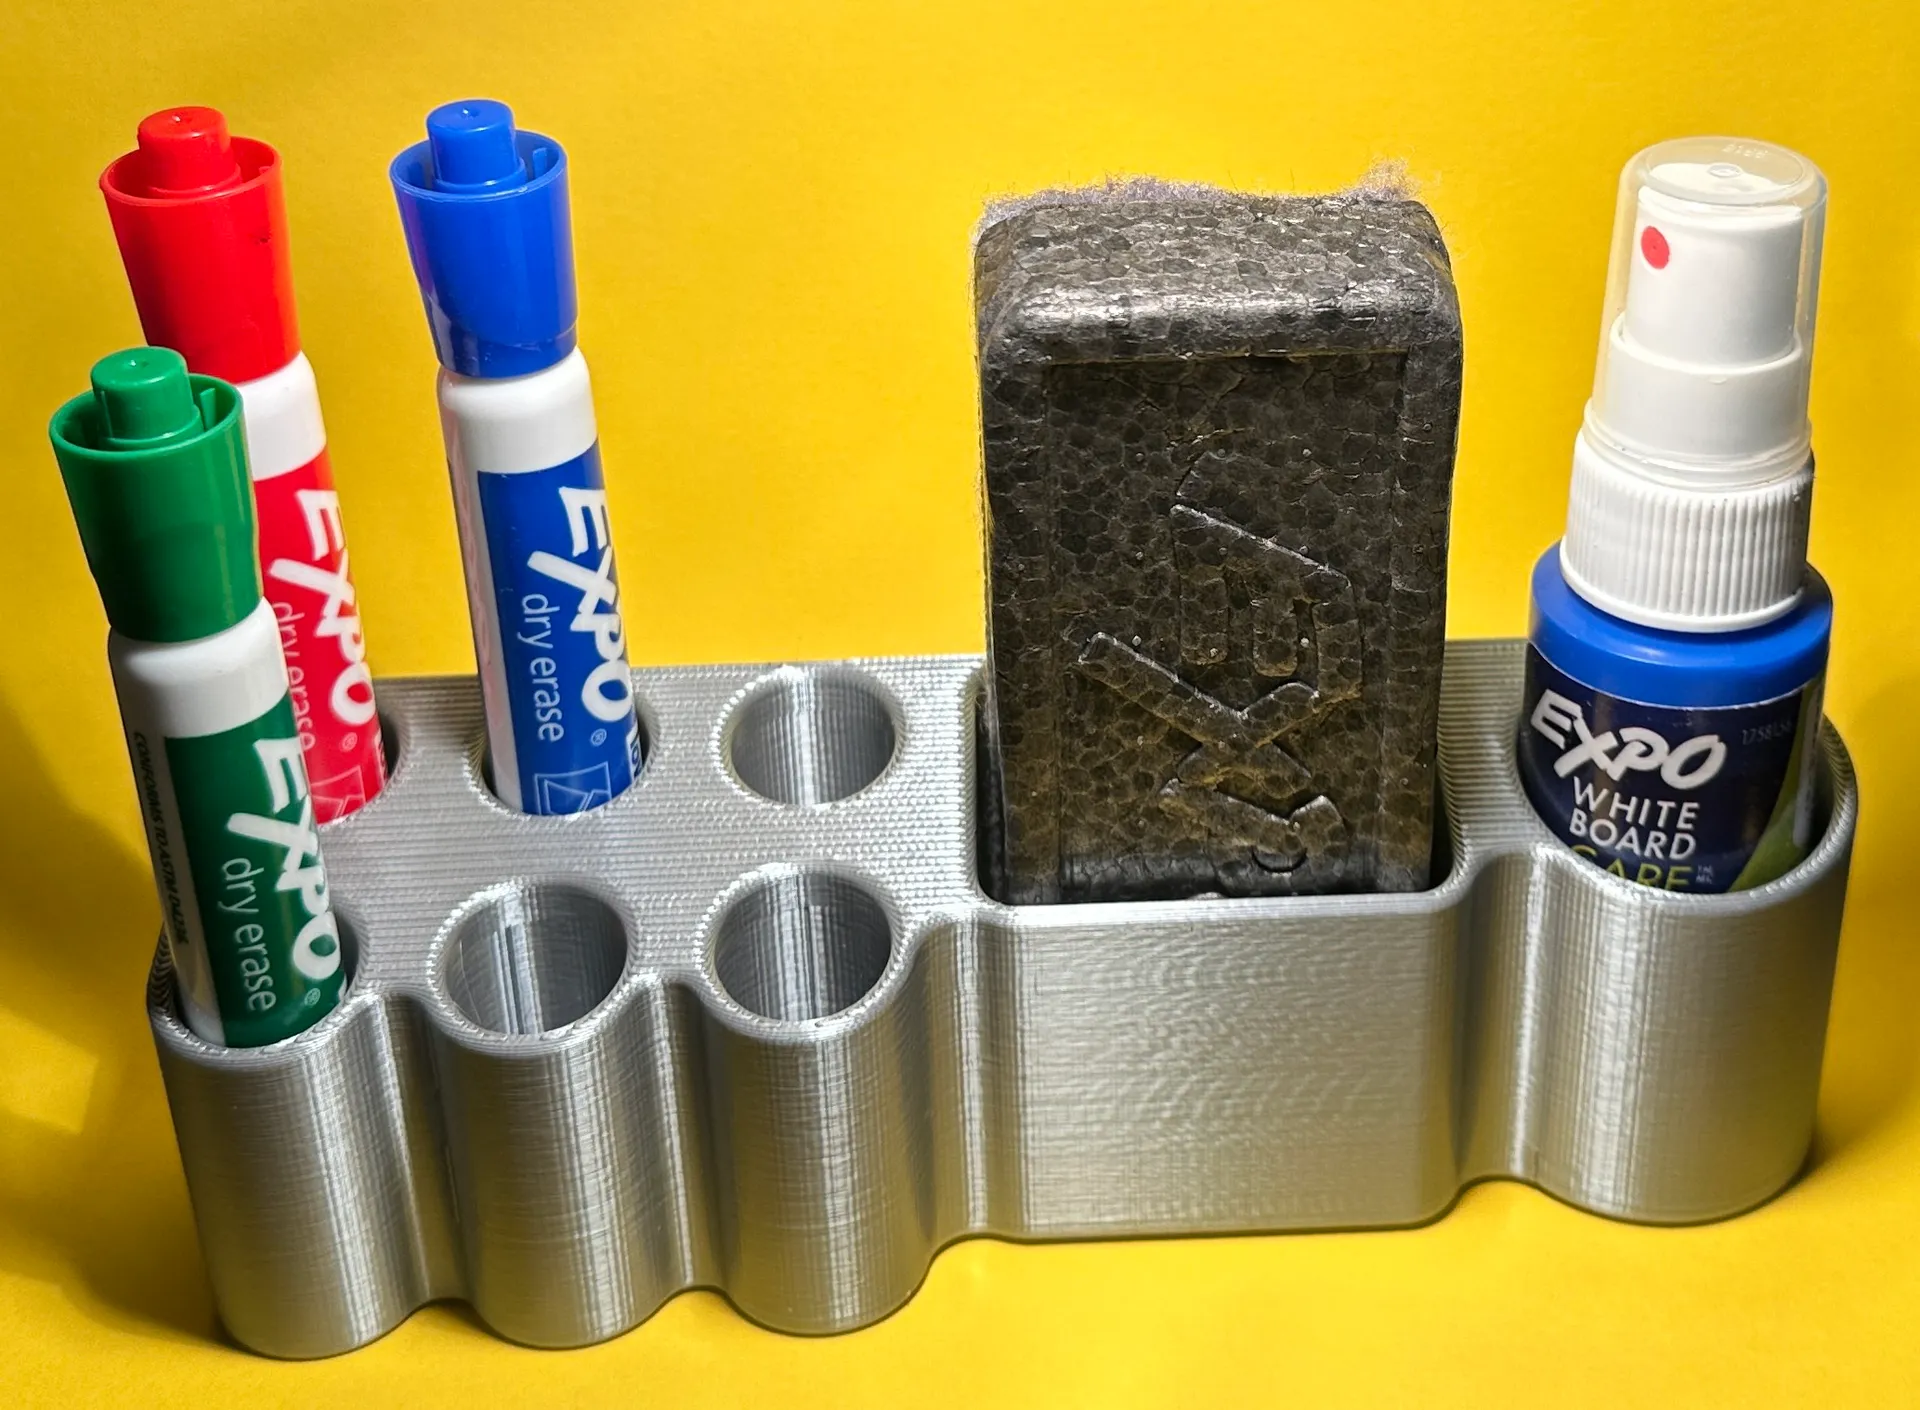 Modèle Expo Dry Erase Marker Set par lendres, photo par VisualReversal